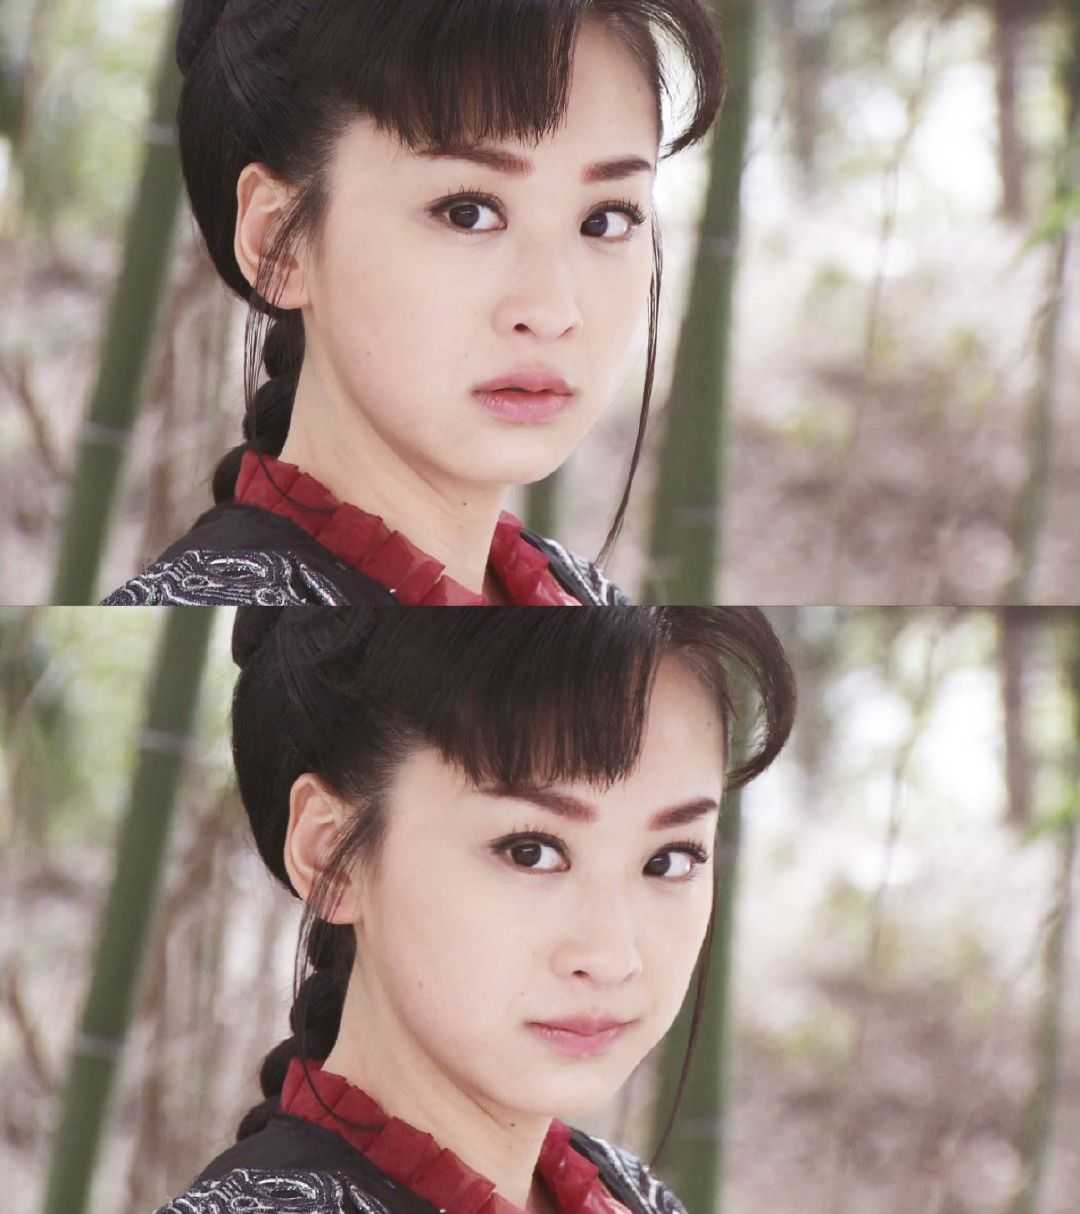 她2011年在《七种武器之孔雀翎》中搭档释小龙,饰演女主刘星,是一个